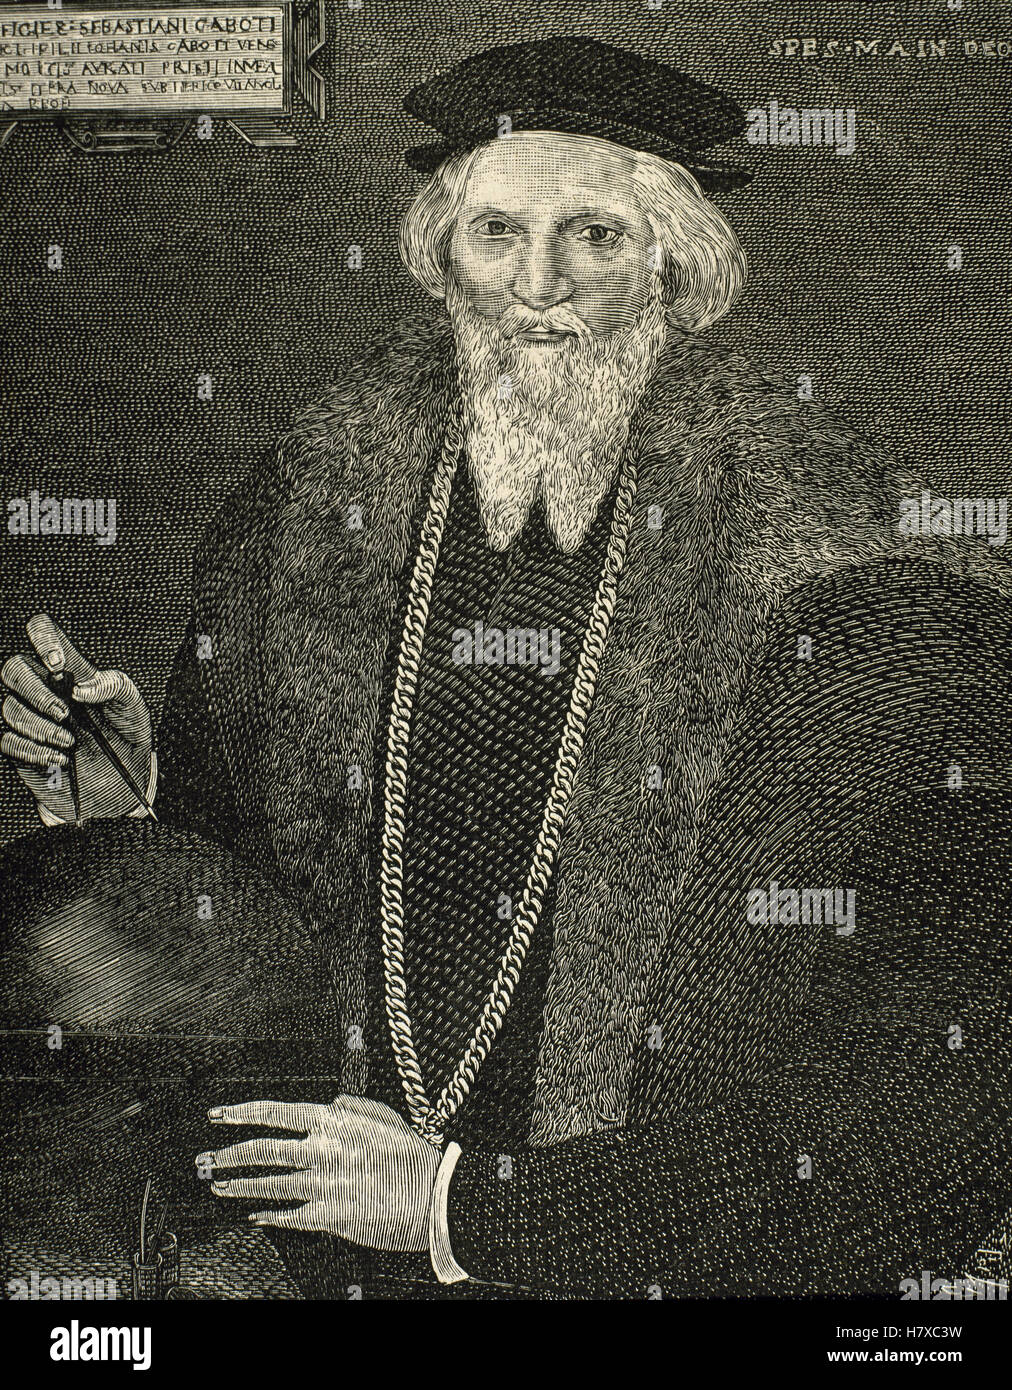 Sebastian Cabot (c. 1474-c. 1557). Italian explorer. Ritratto. Incisione di Capuz. Foto Stock